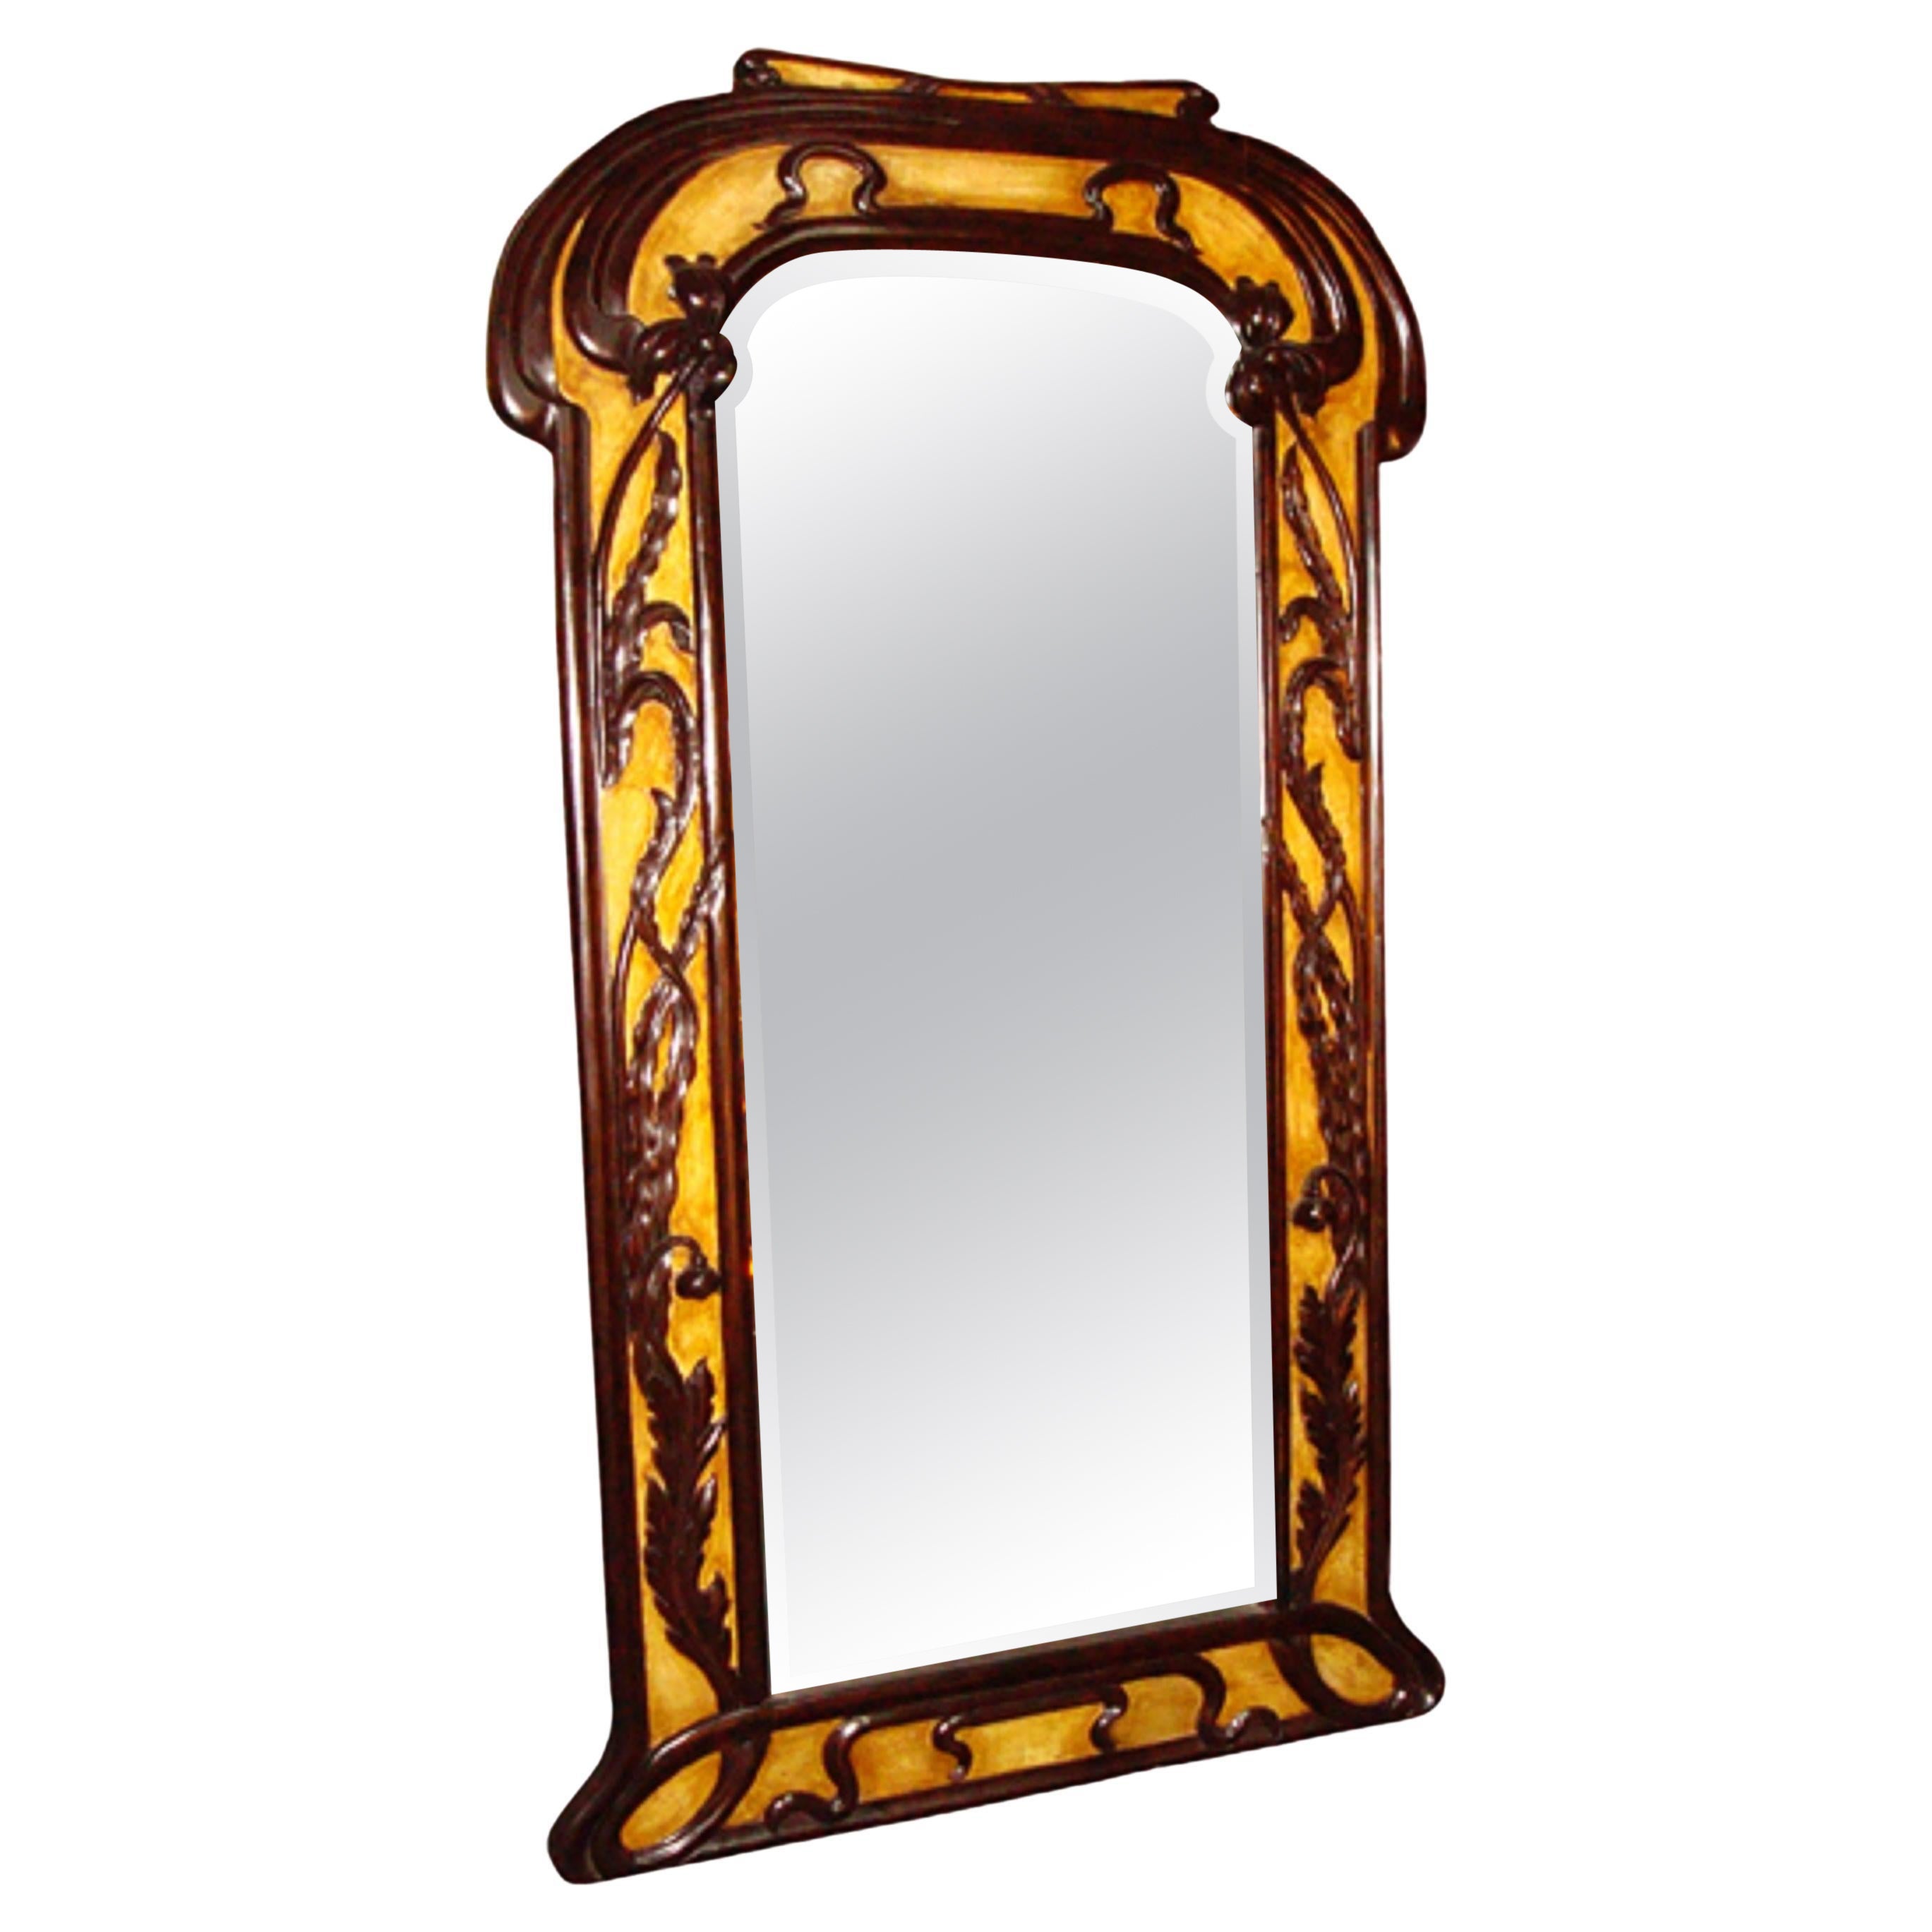 Mirror Jugendstil, Art Nouveau, Liberty, France, parchment leather, wood , mirror